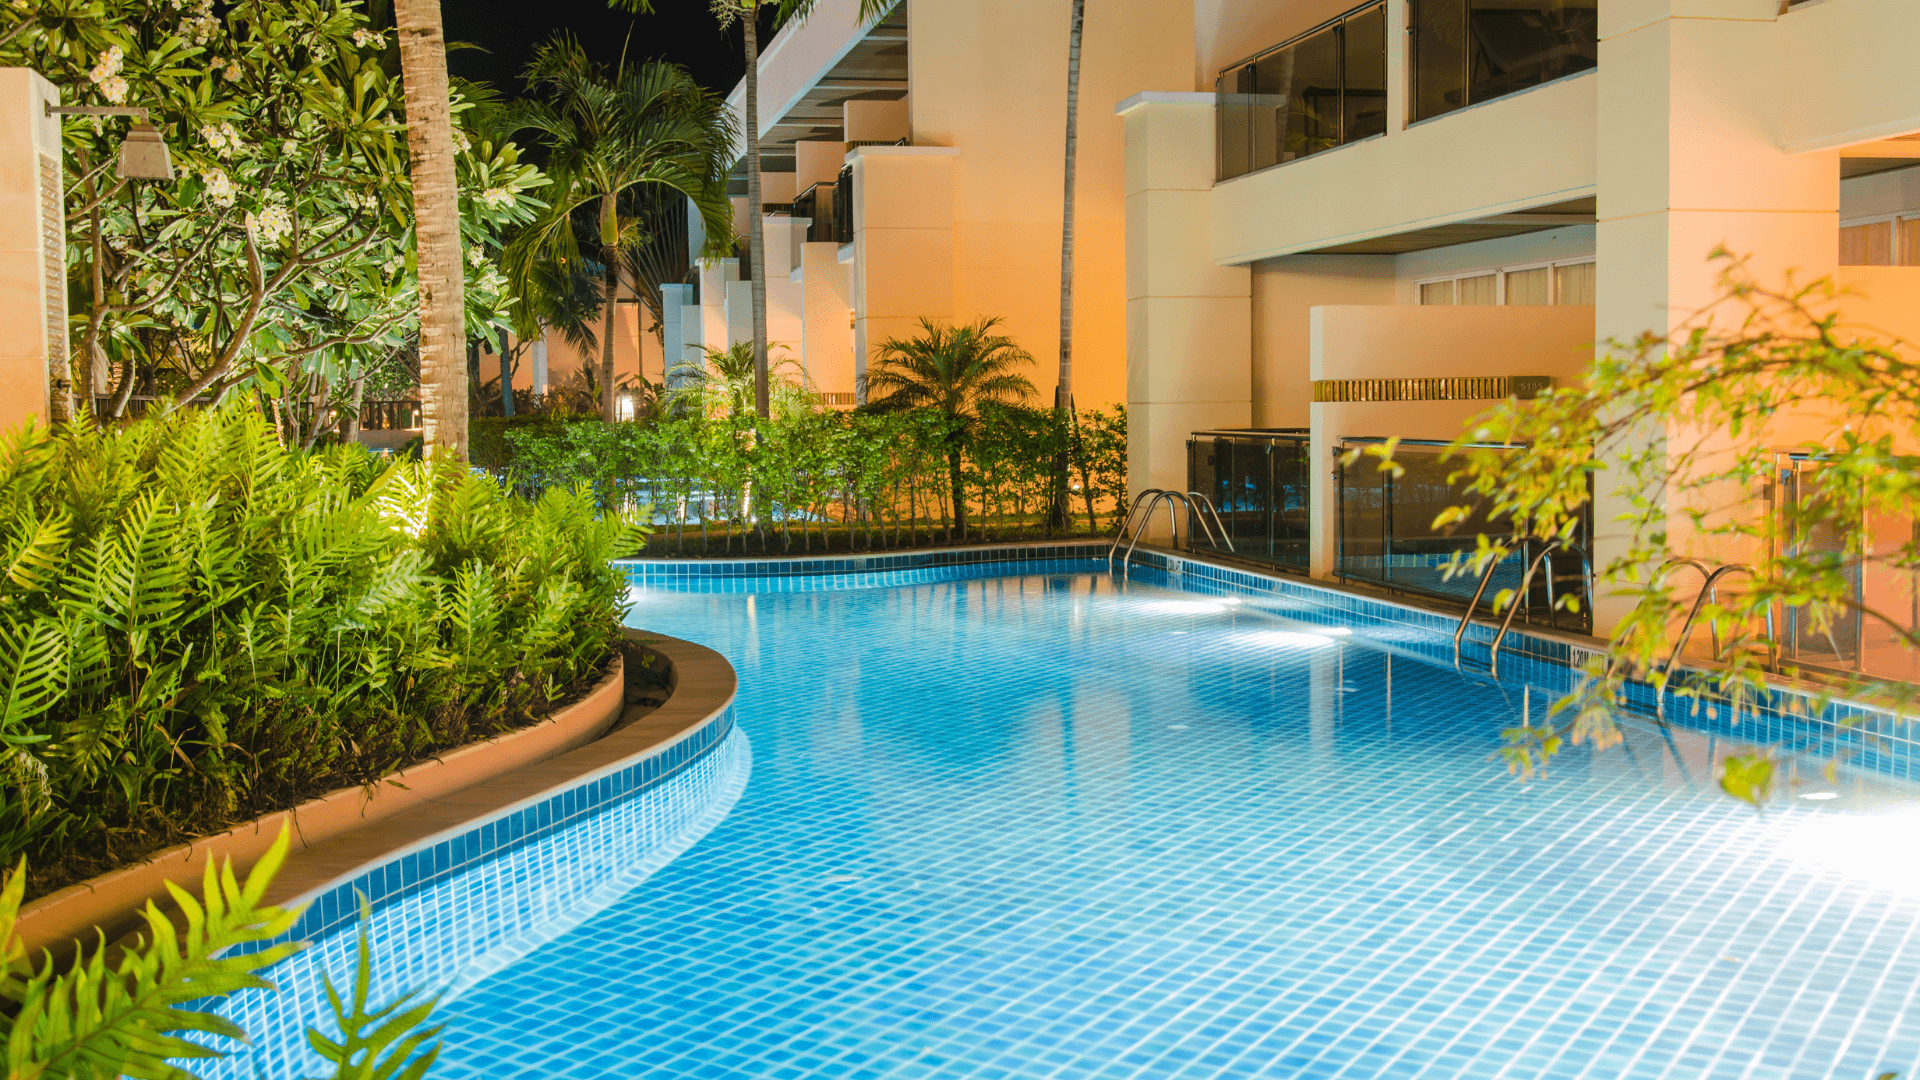 Harmonie en plein air : la piscine extérieure ronde de l'hôtel RL Piscine, un oasis aquatique entouré par le luxe et la nature. Le design circulaire offre une esthétique moderne, tandis que les espaces lounge invitent à la détente sous le ciel ouvert.